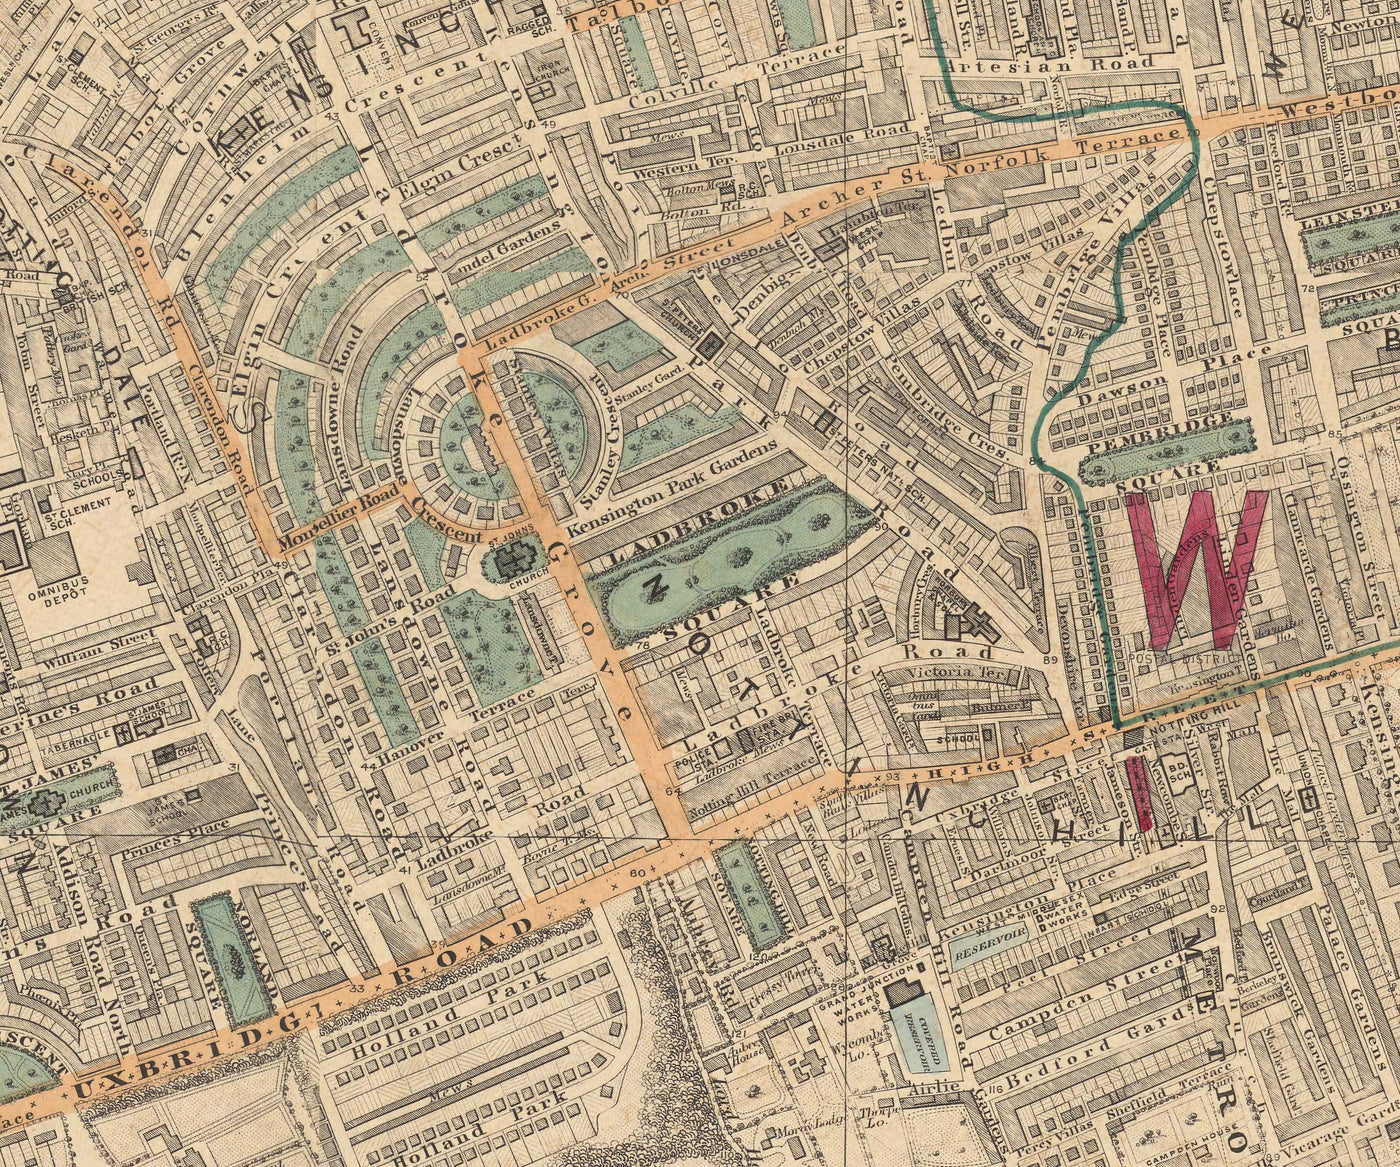 Old Colour Map of West London - Notting Hill, Kensington, Portobello Road, Shepherds Bush, Bayswater - W11 W2 W8 SW7 W14 W6 W12 W10